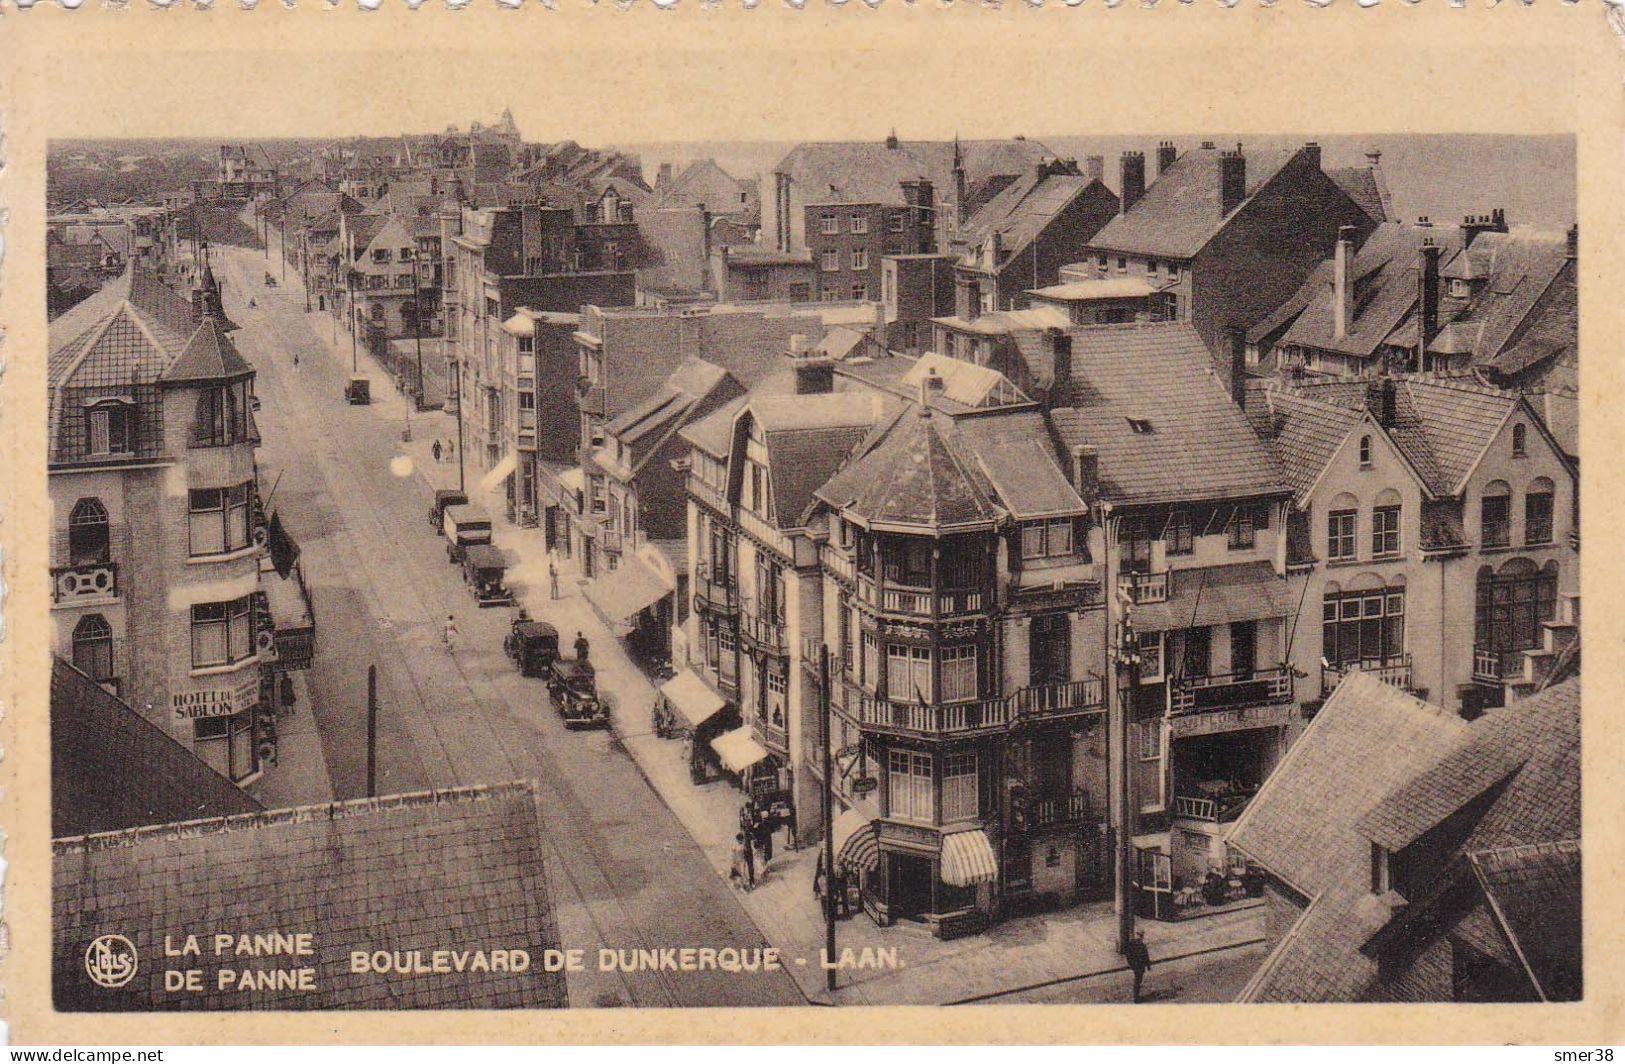 Belgique - Flandre Occ. - La Panne - Boulevard De Dunkerque - Laan - Cpa - De Panne